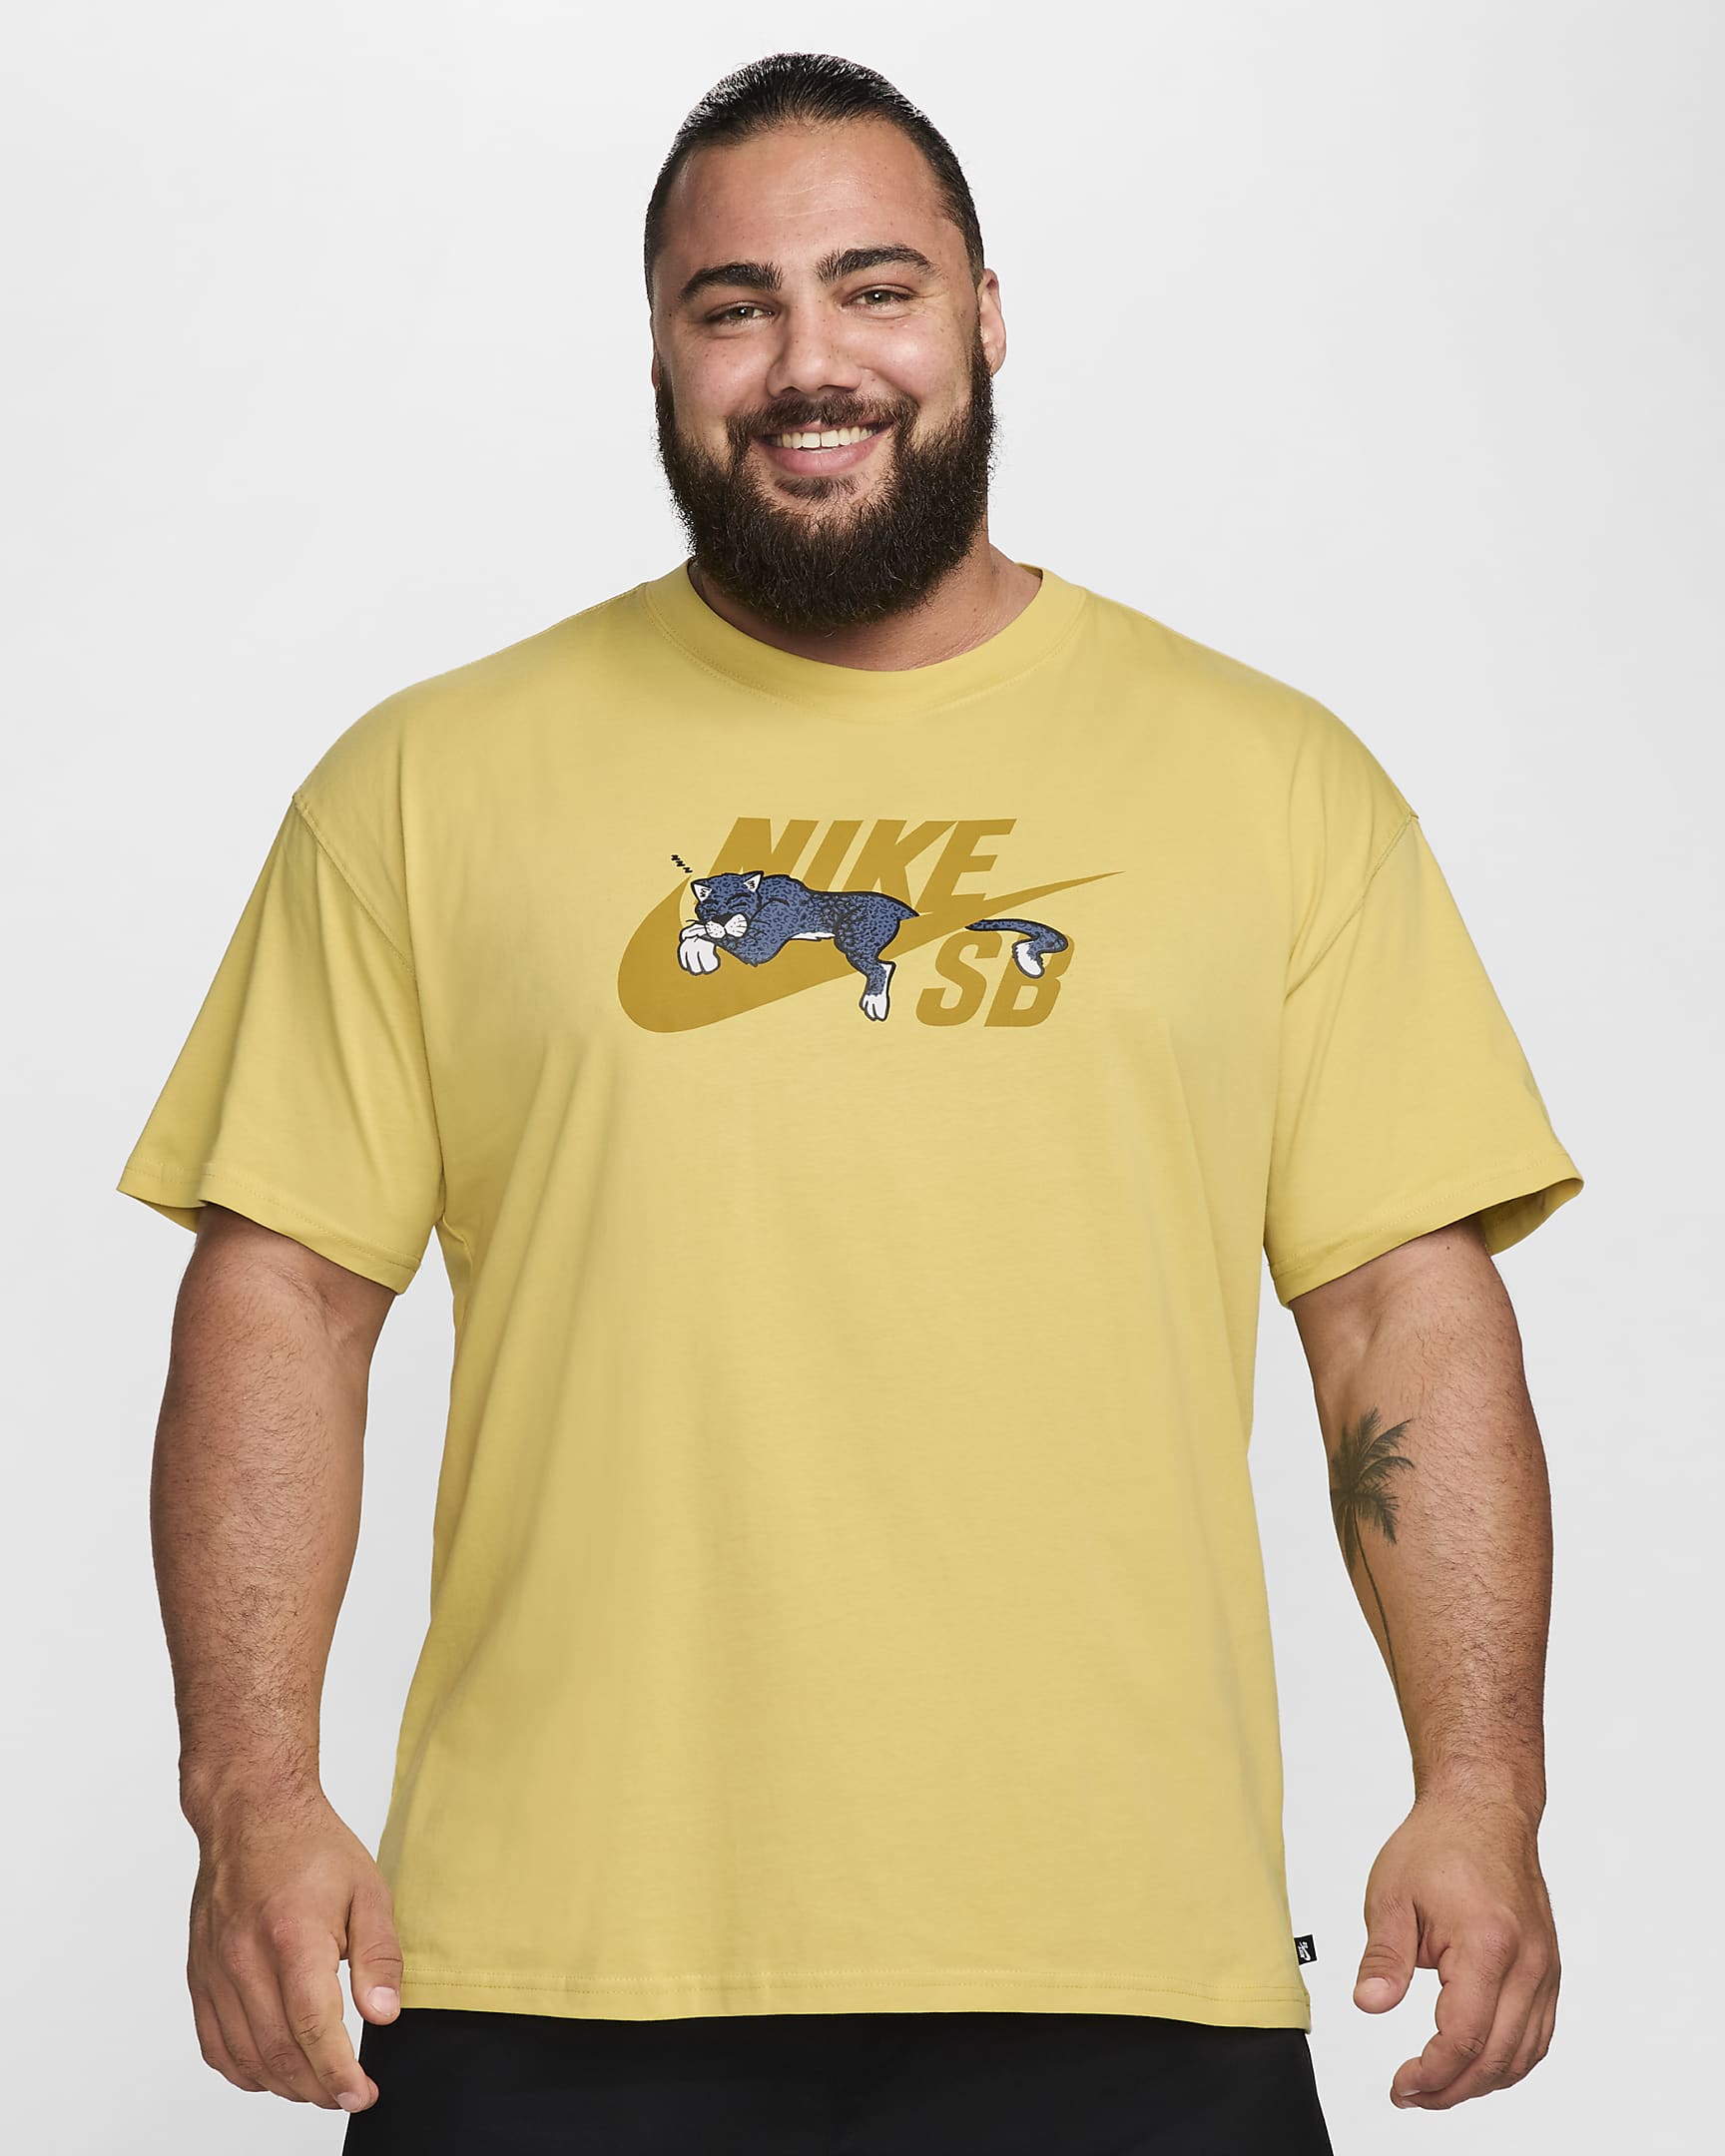 Nike SB Skate-T-Shirt. Nike SK